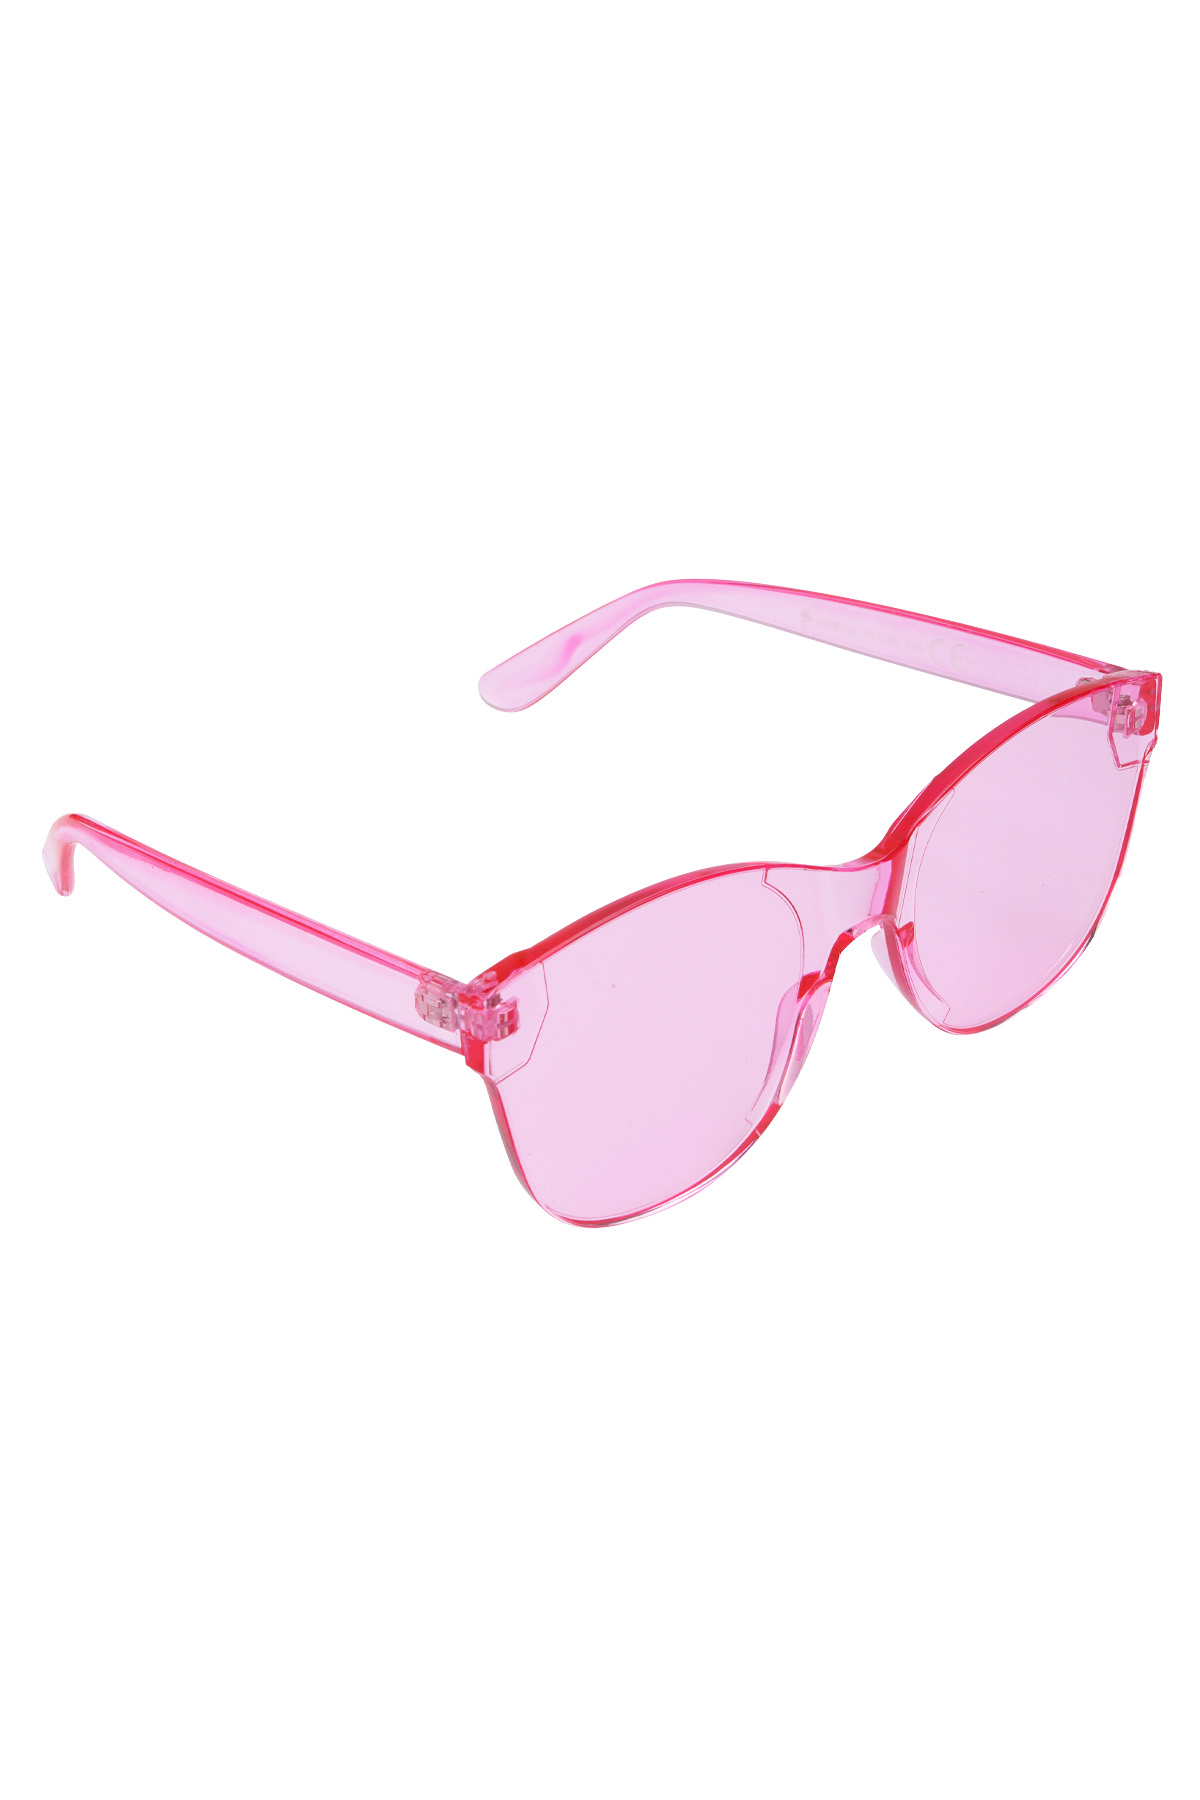 Eenkleurige trendy zonnebril - roze